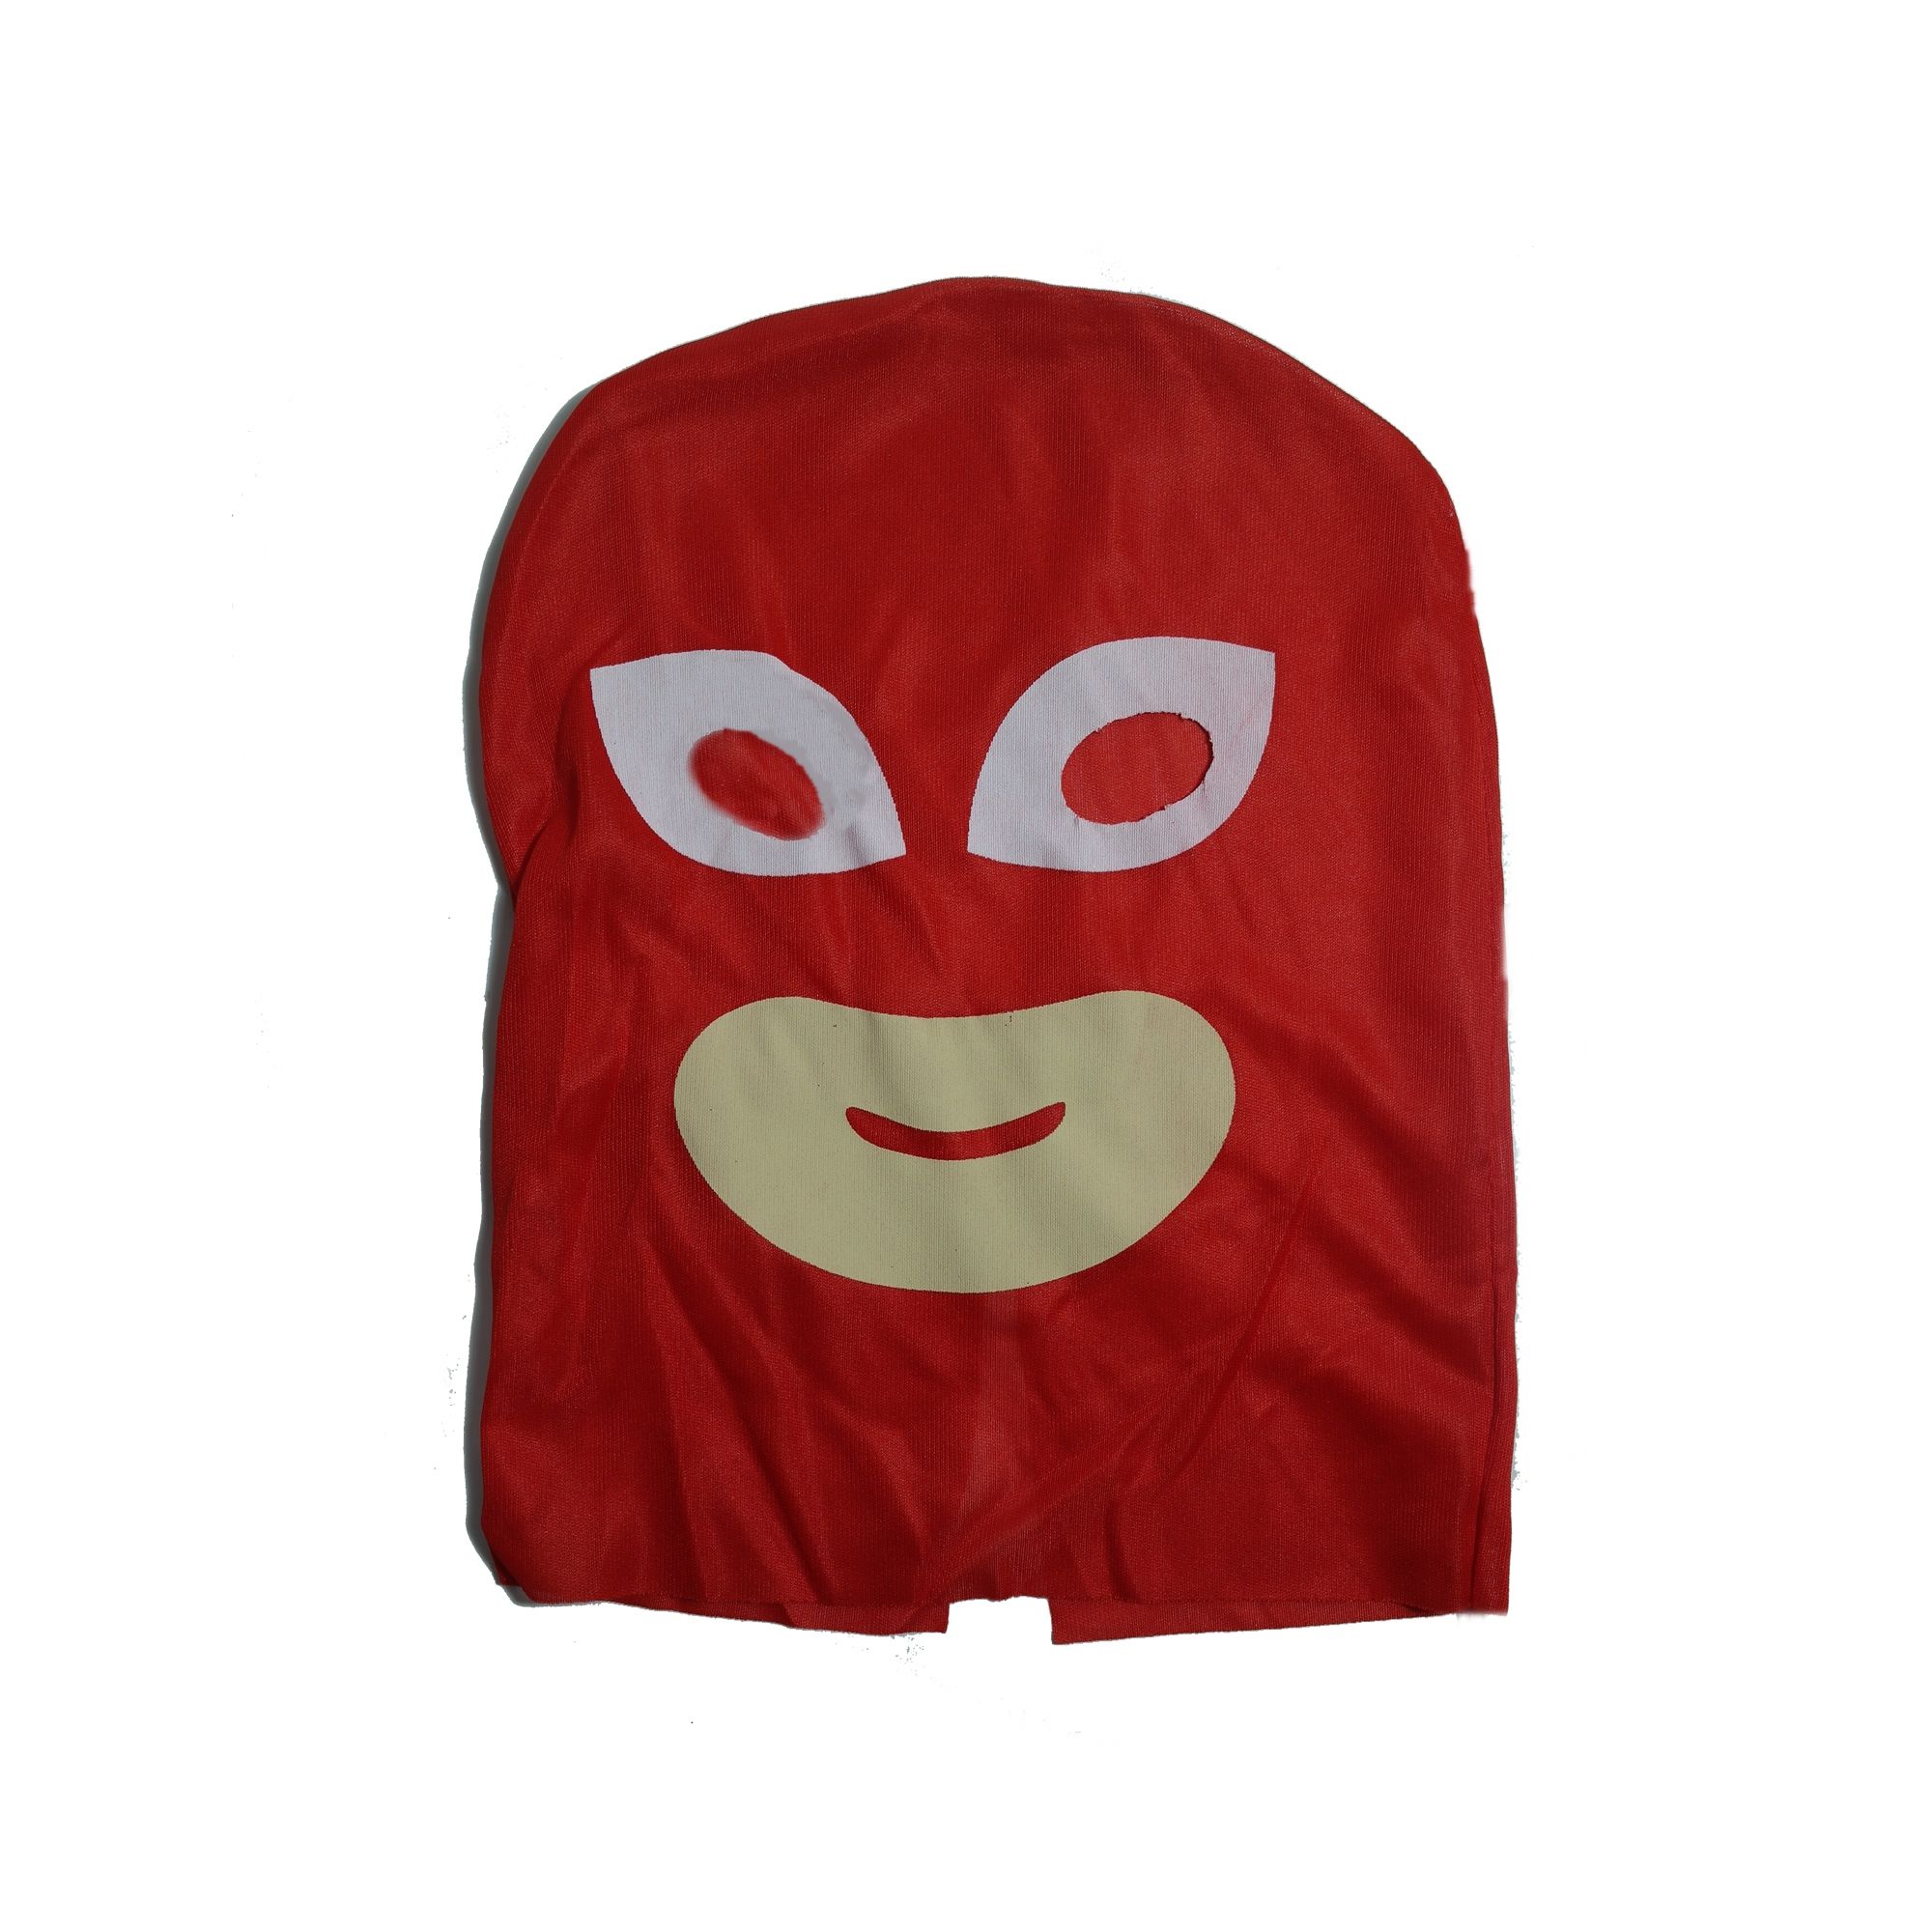 Costum pentru copii  Red Owl, marimea 7-9 ani, jucarie inclusa